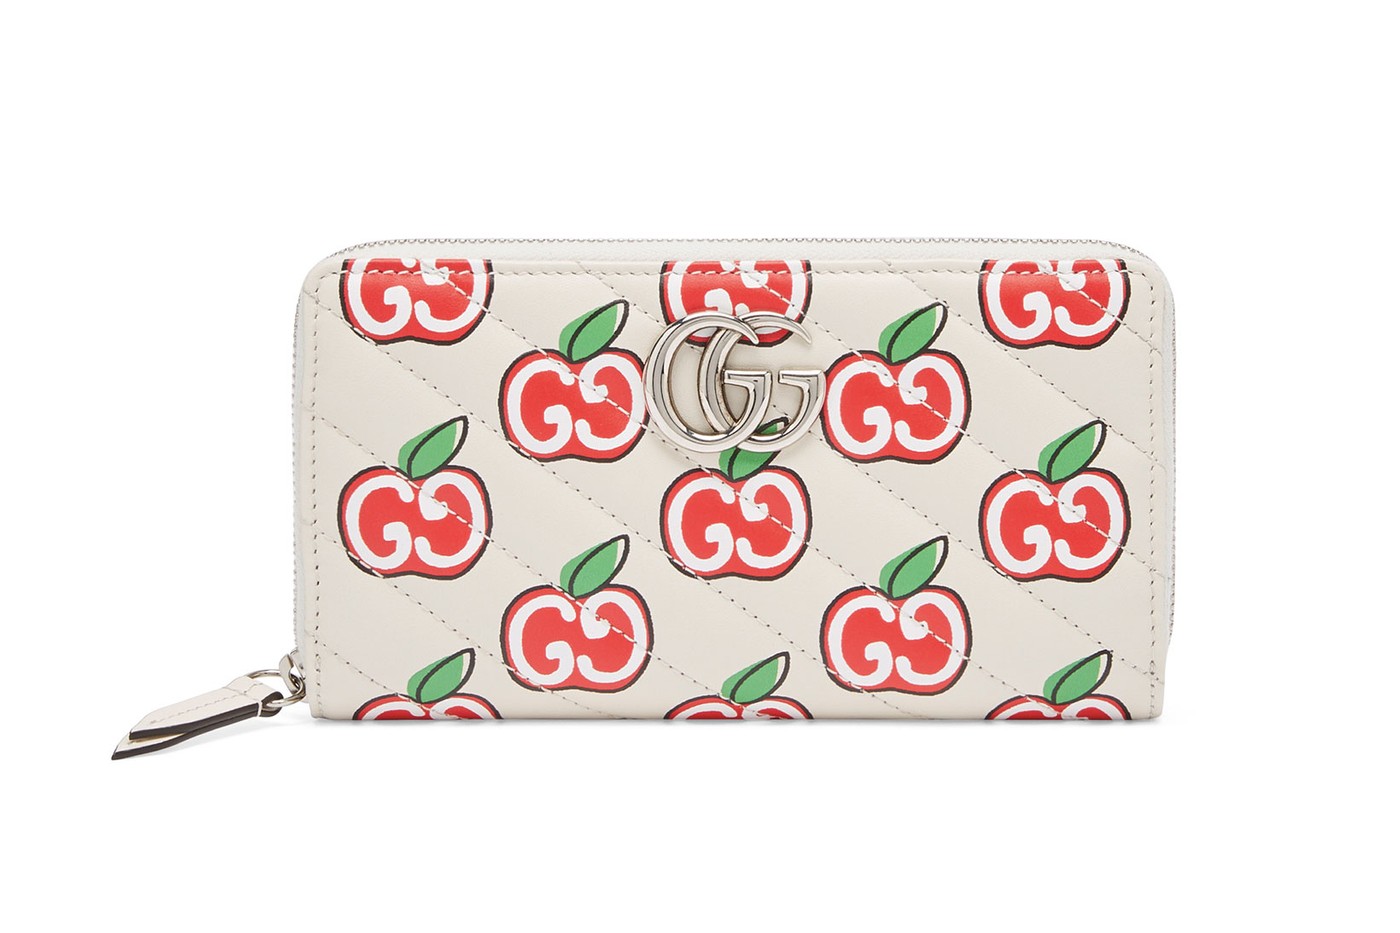 Gucci покрыл сумки принтом с яблоками в честь китайского Дня всех влюбленных (фото 10)